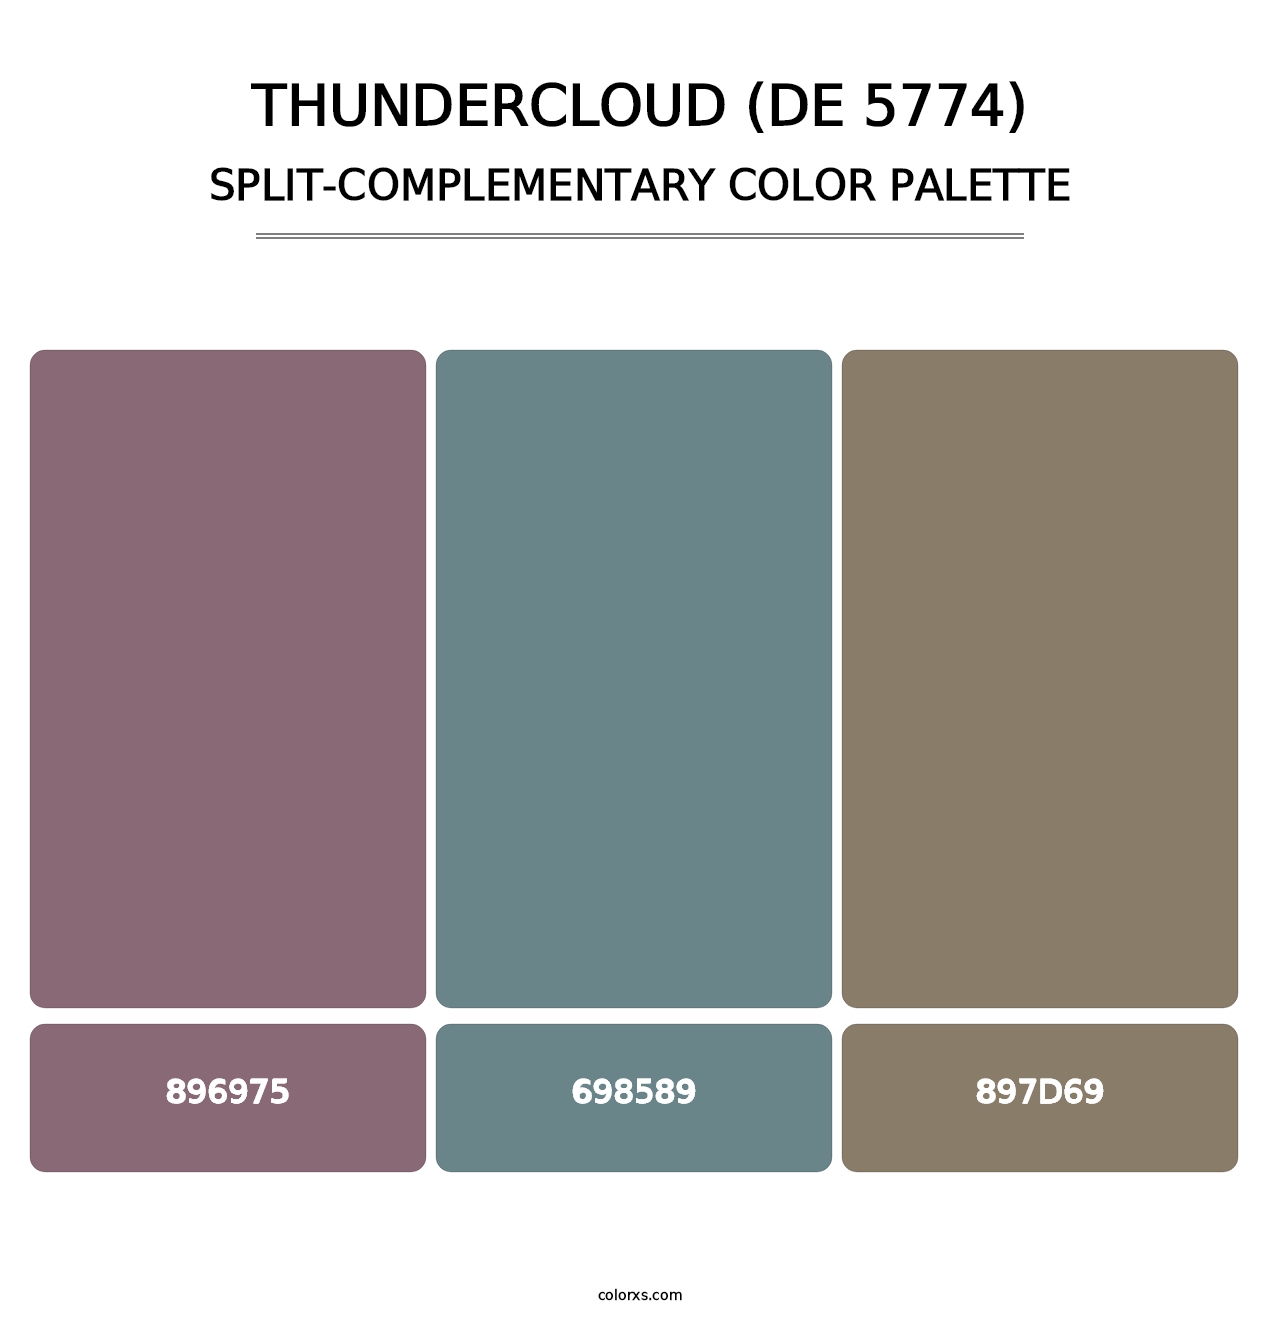 Thundercloud (DE 5774) - Split-Complementary Color Palette